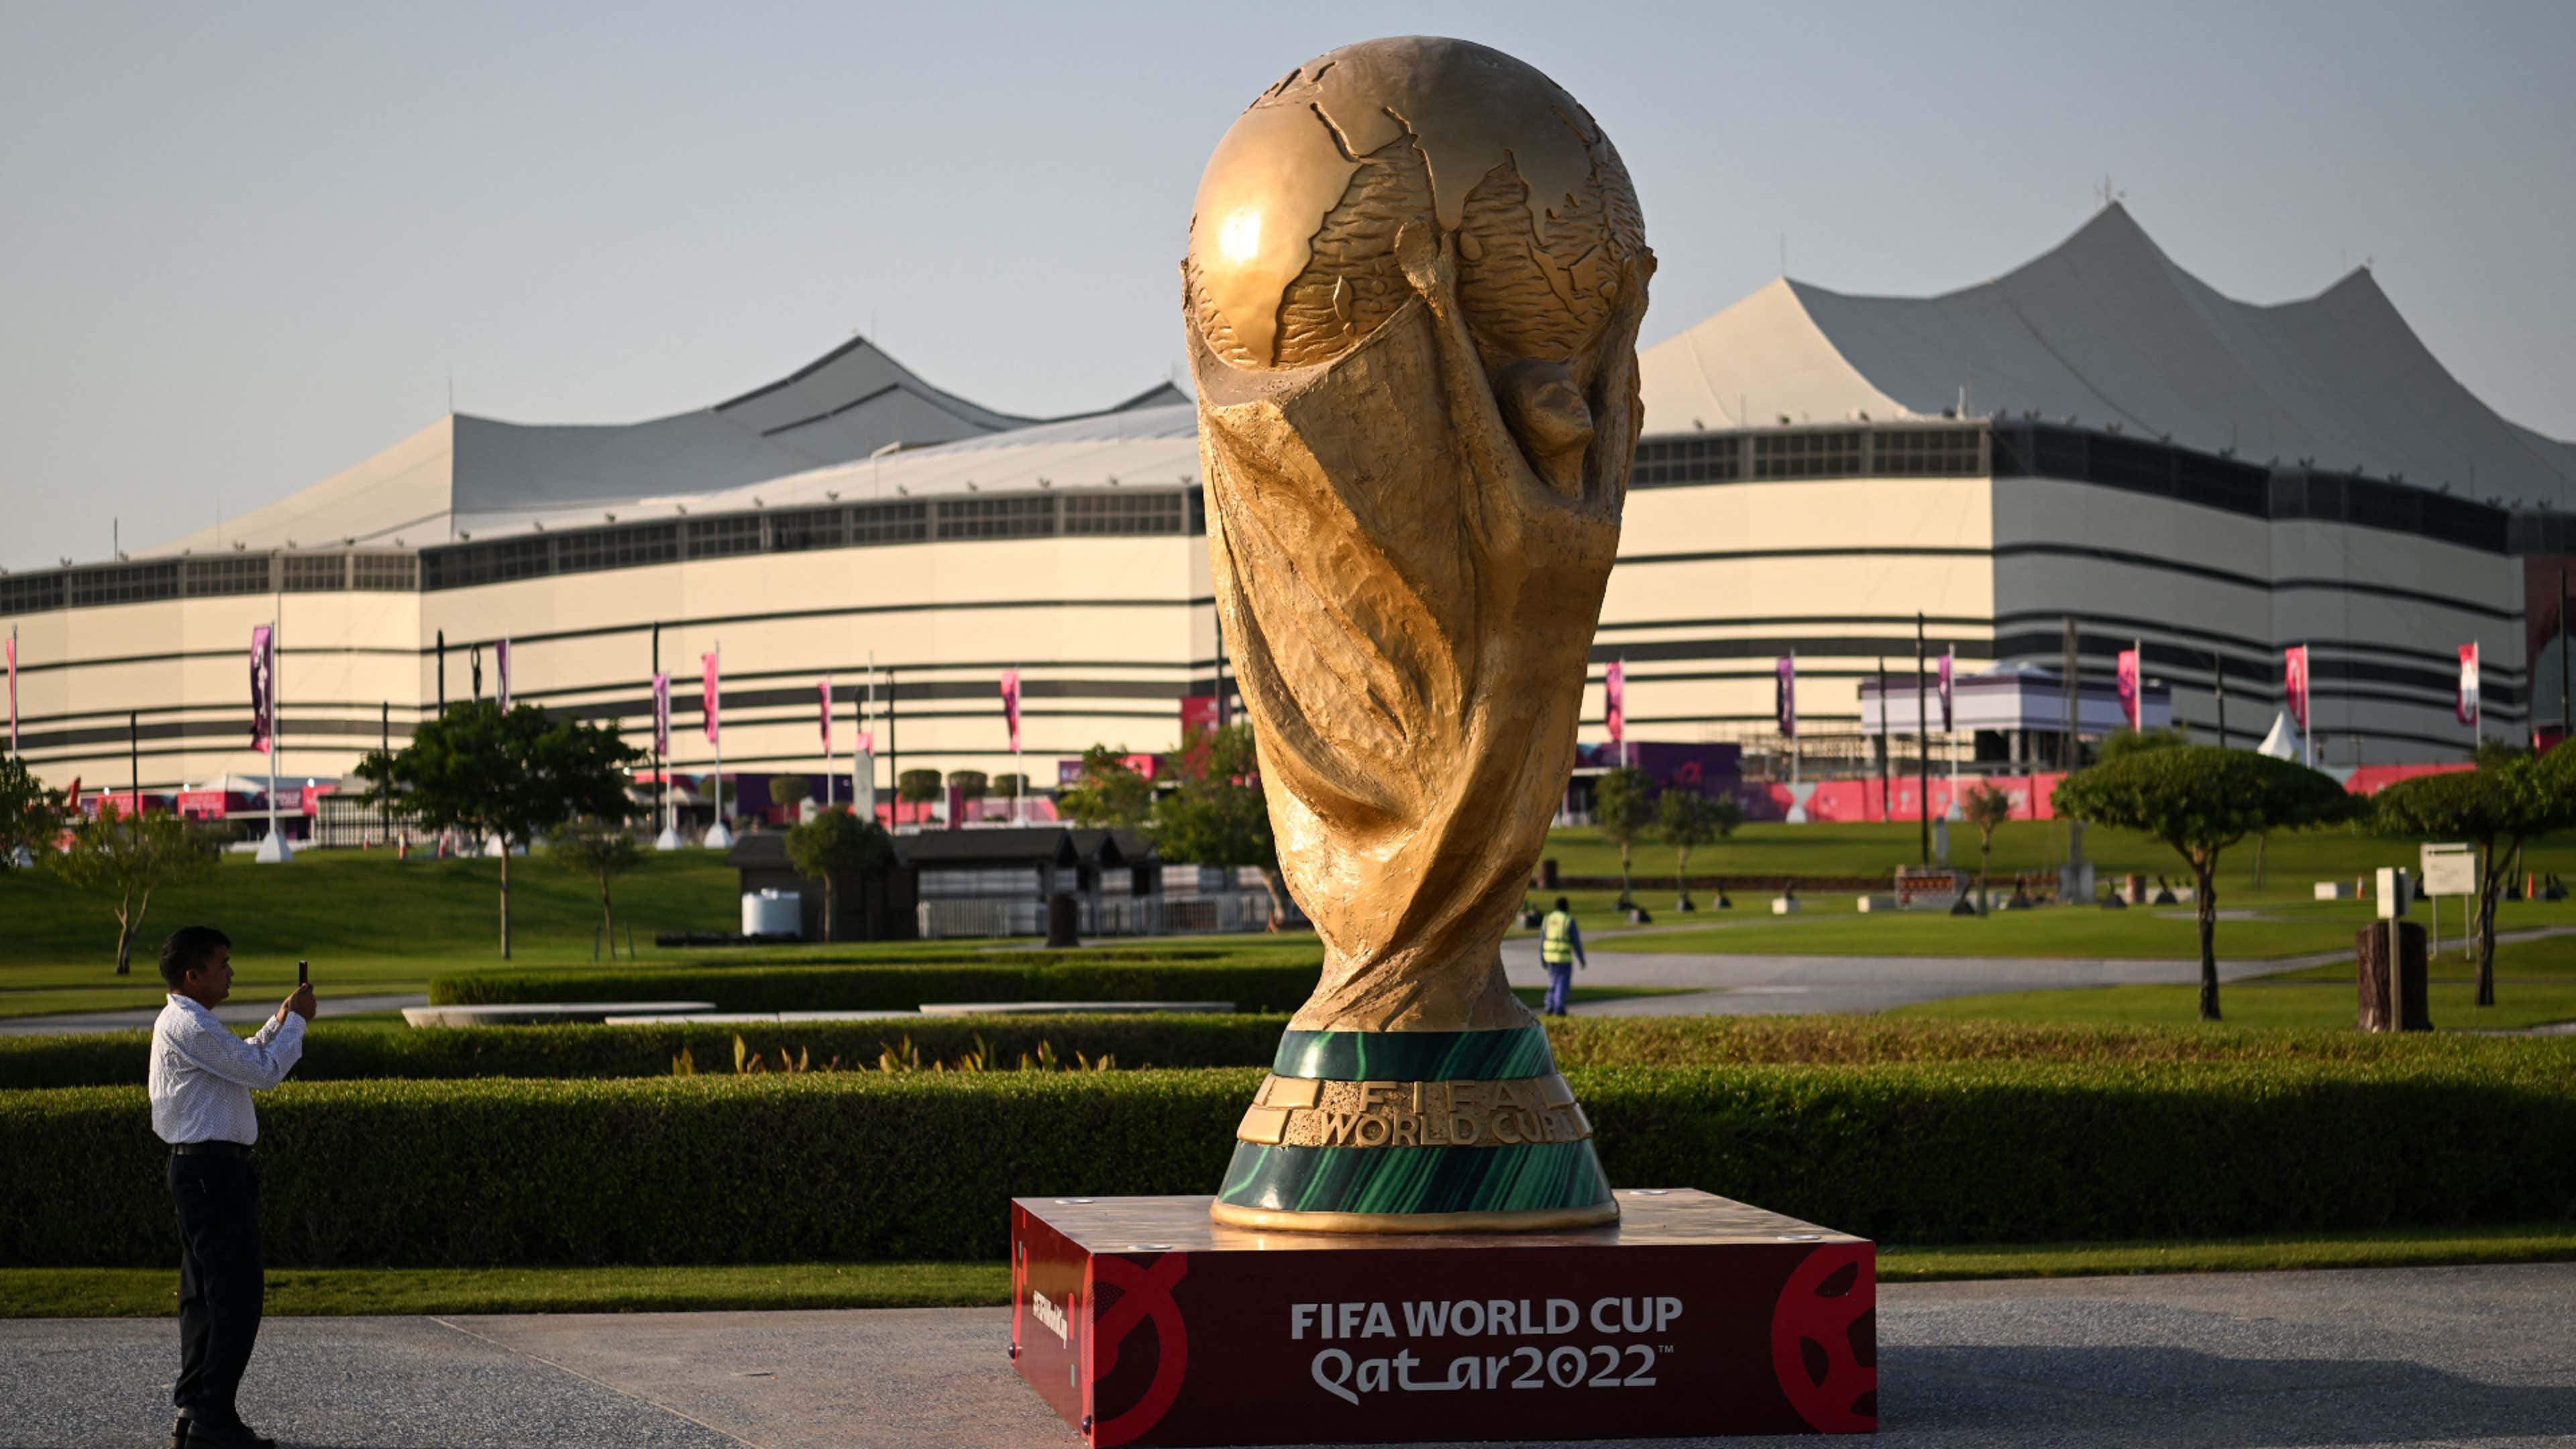 Fifa revela datas e horários de jogos da Copa do Mundo de 2022 no Catar -  Placar - O futebol sem barreiras para você